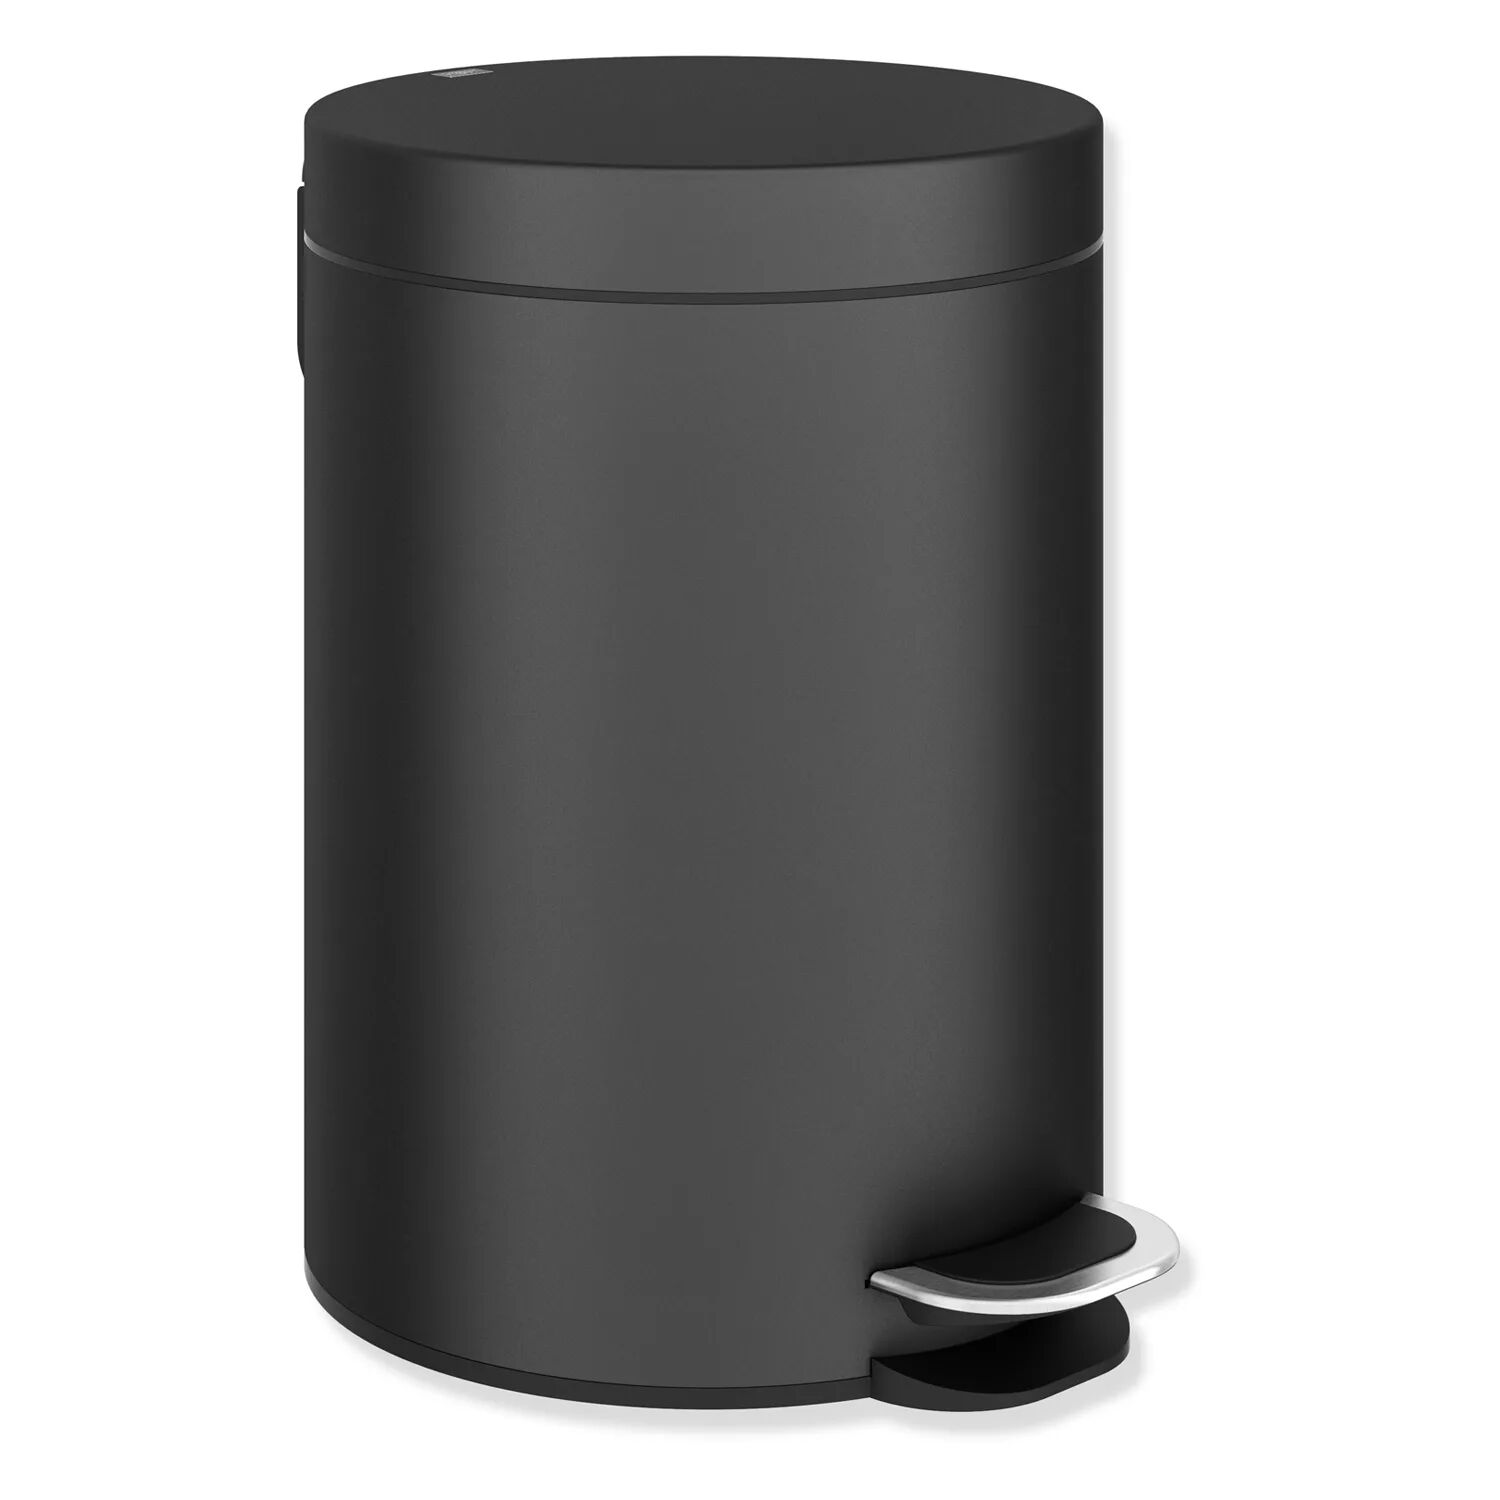 HEWI System 900 Abfallbehälter System 900 Ø: 20 H: 29,5 cm schwarz matt 950.05.31501